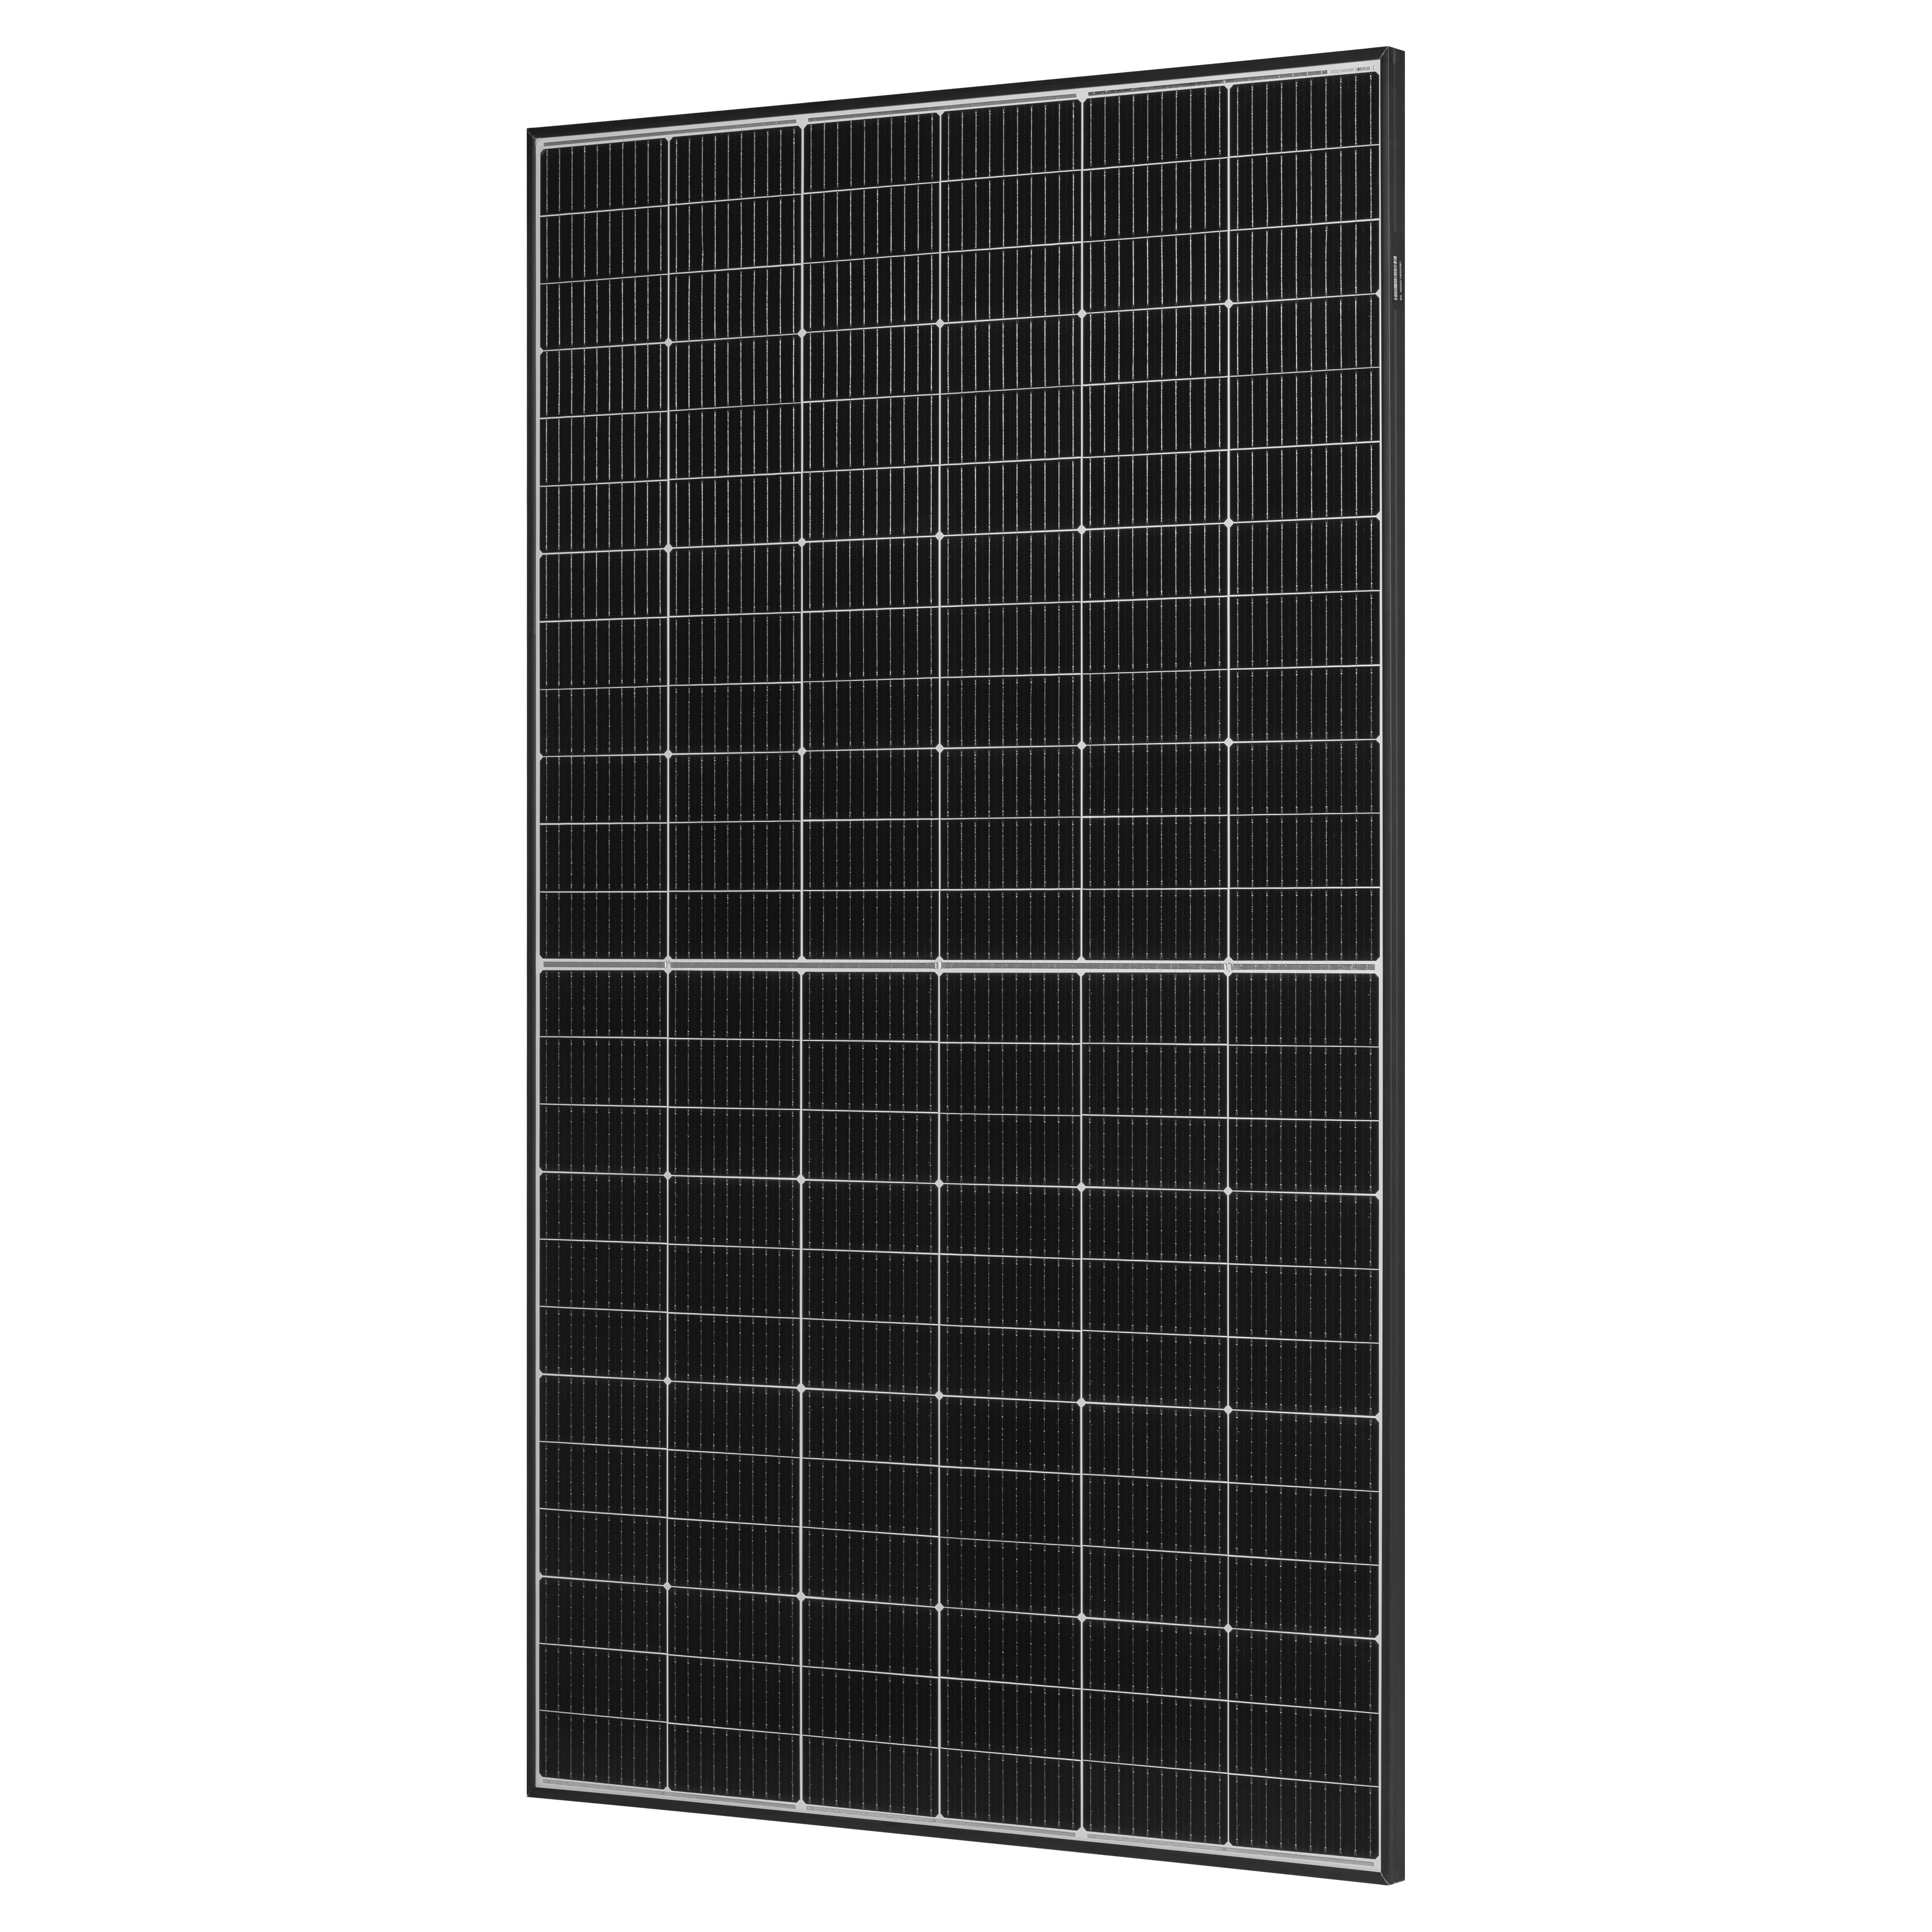 Цена солнечная панель Trina Solar TSM-425 DE09R.08 в Одессе